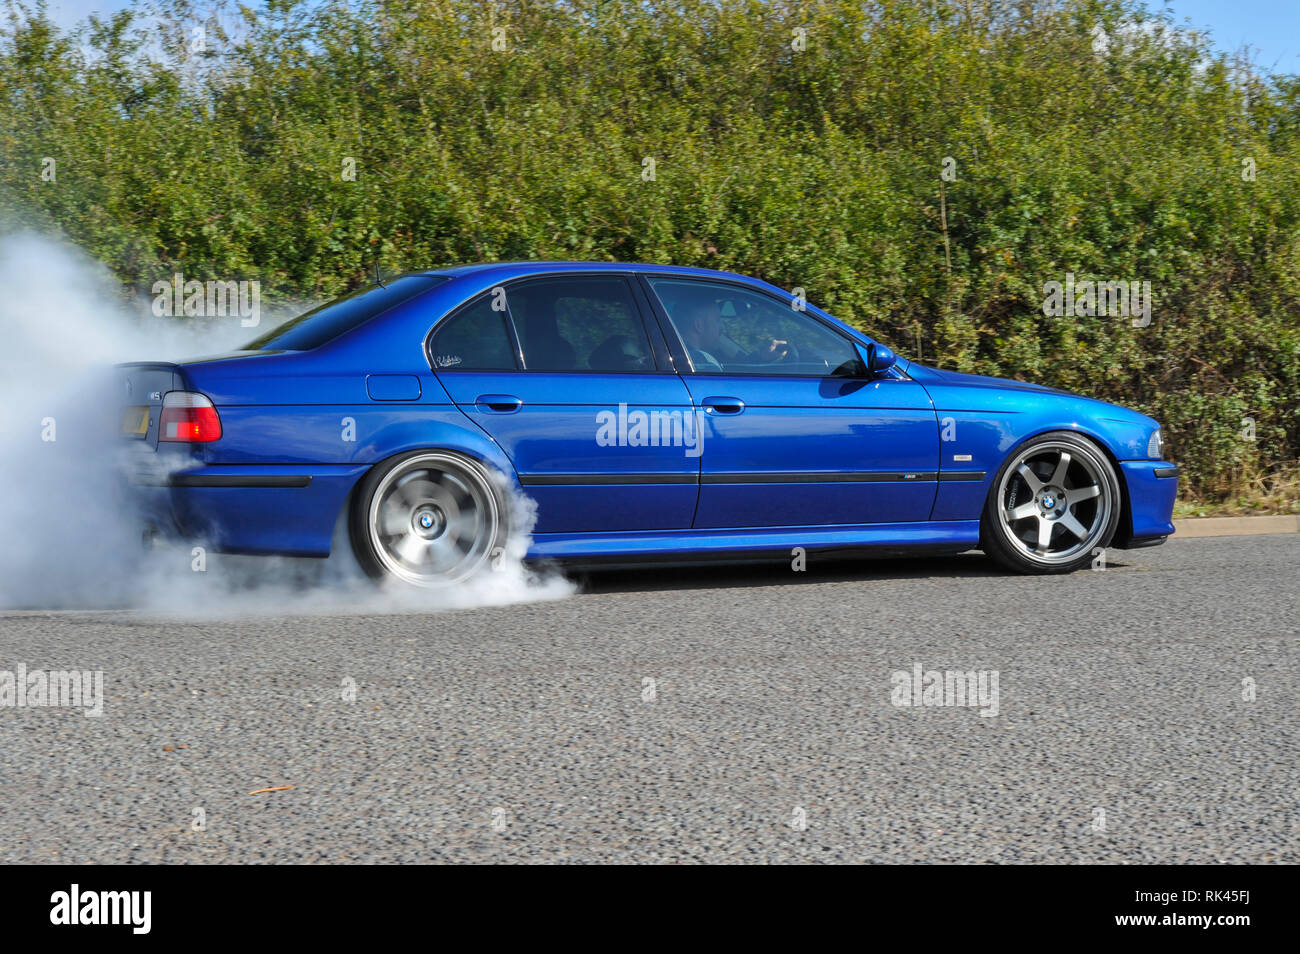 Massive reifen rauchen Burnout von BMW E39 M5 super Limousine modern  klassisch deutschen Auto Stockfotografie - Alamy